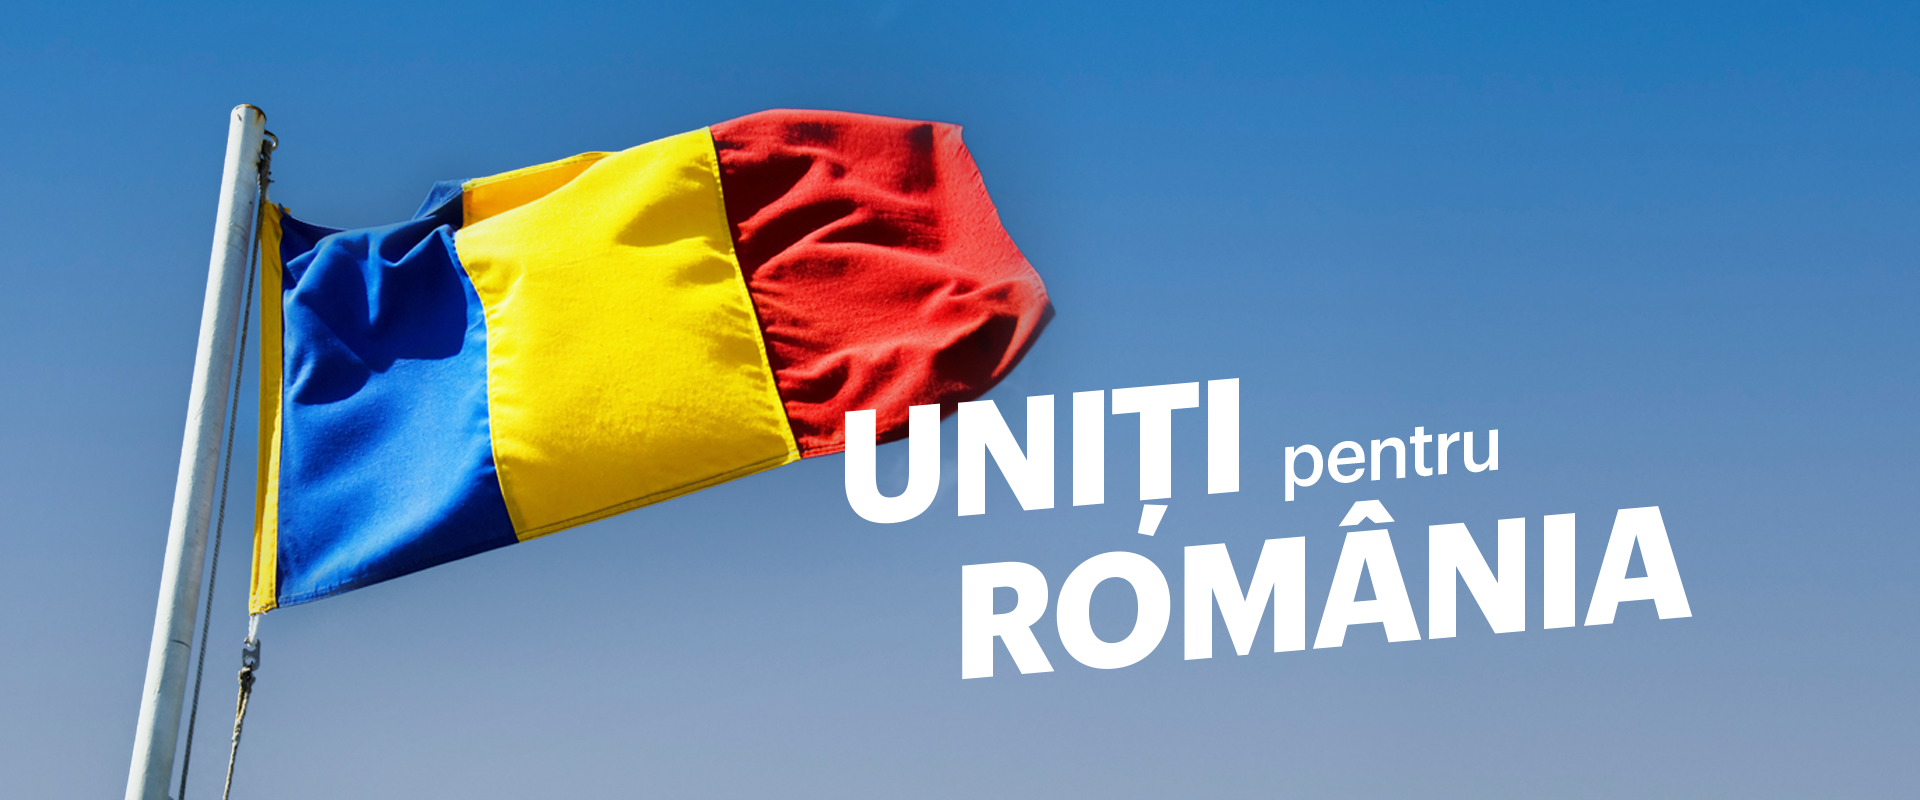 uniti_pentru_Romania